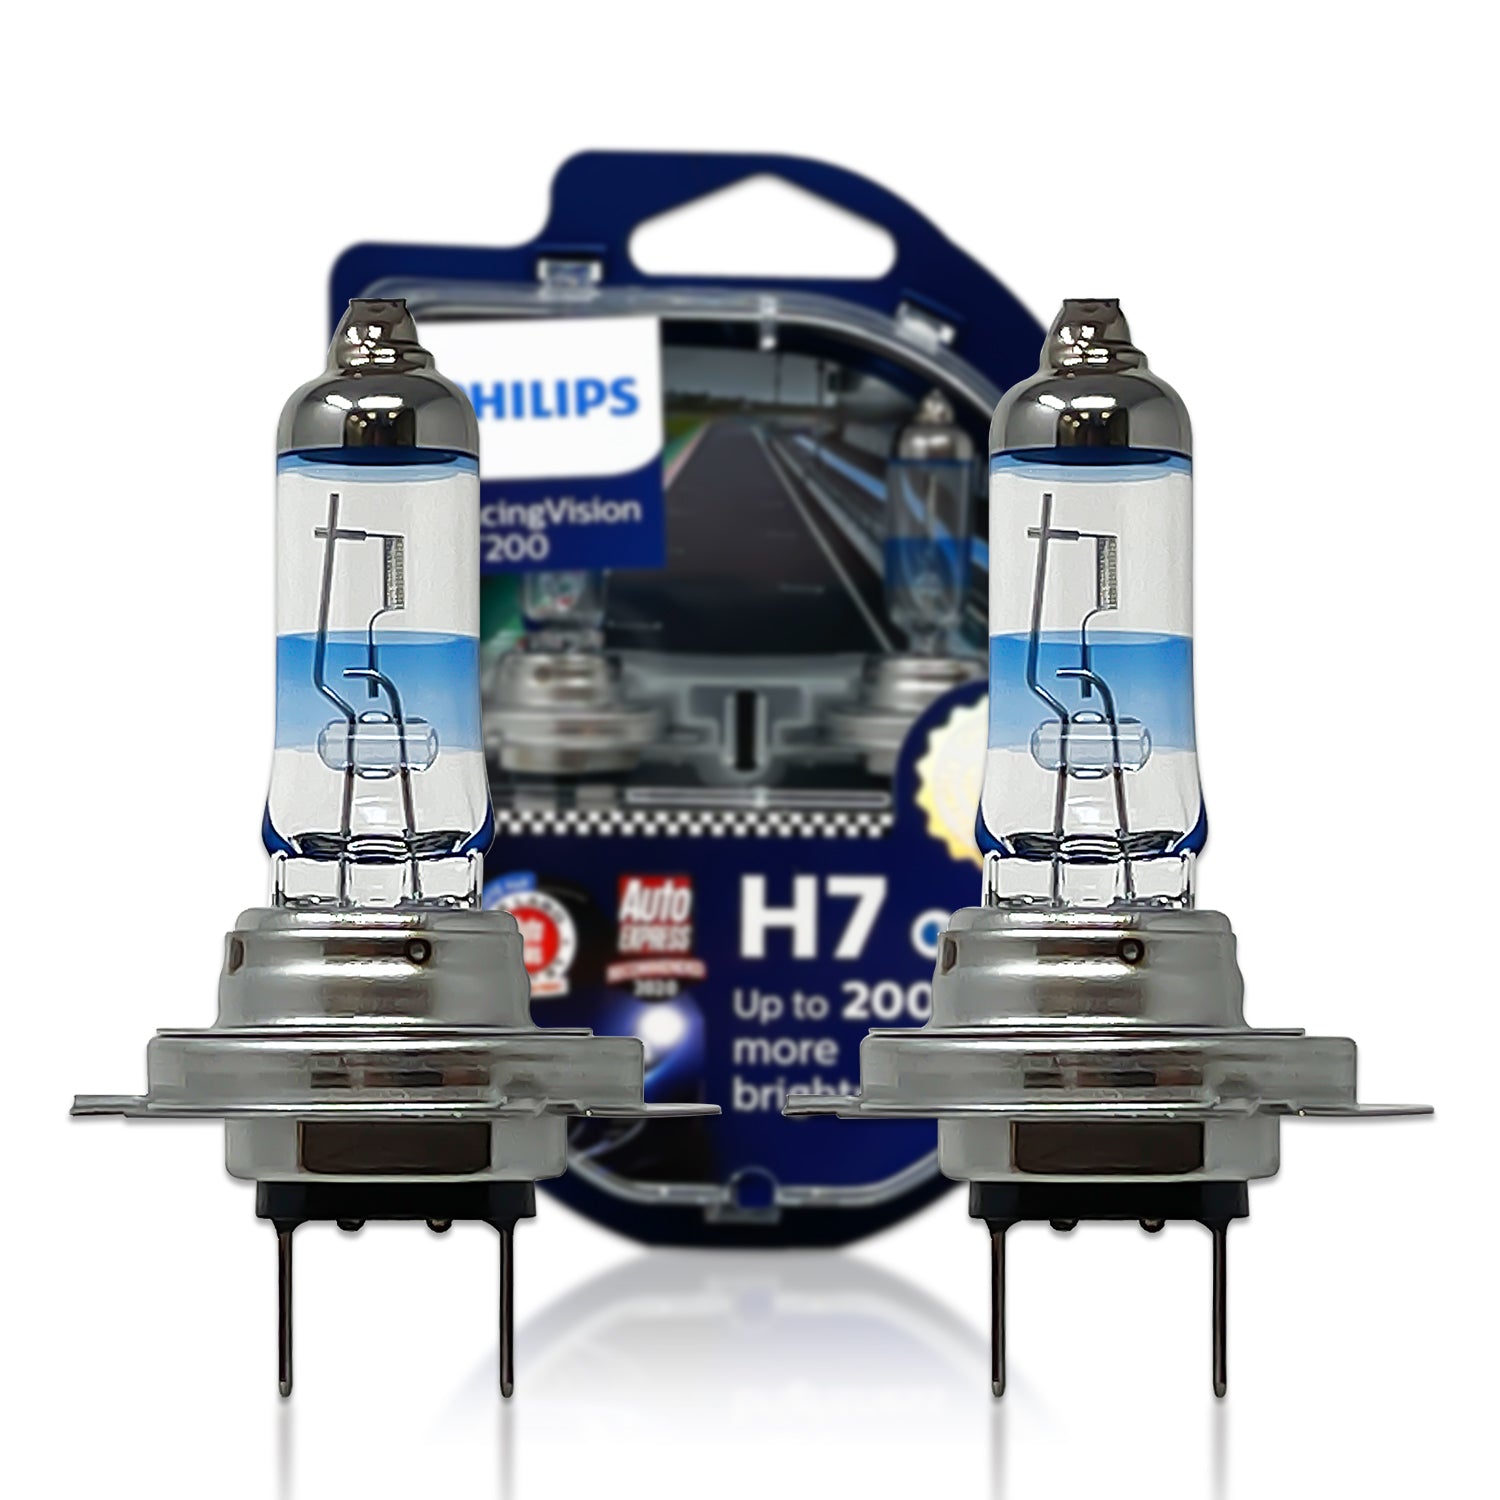 Philips RacingVision GT200 H7 Bulbs